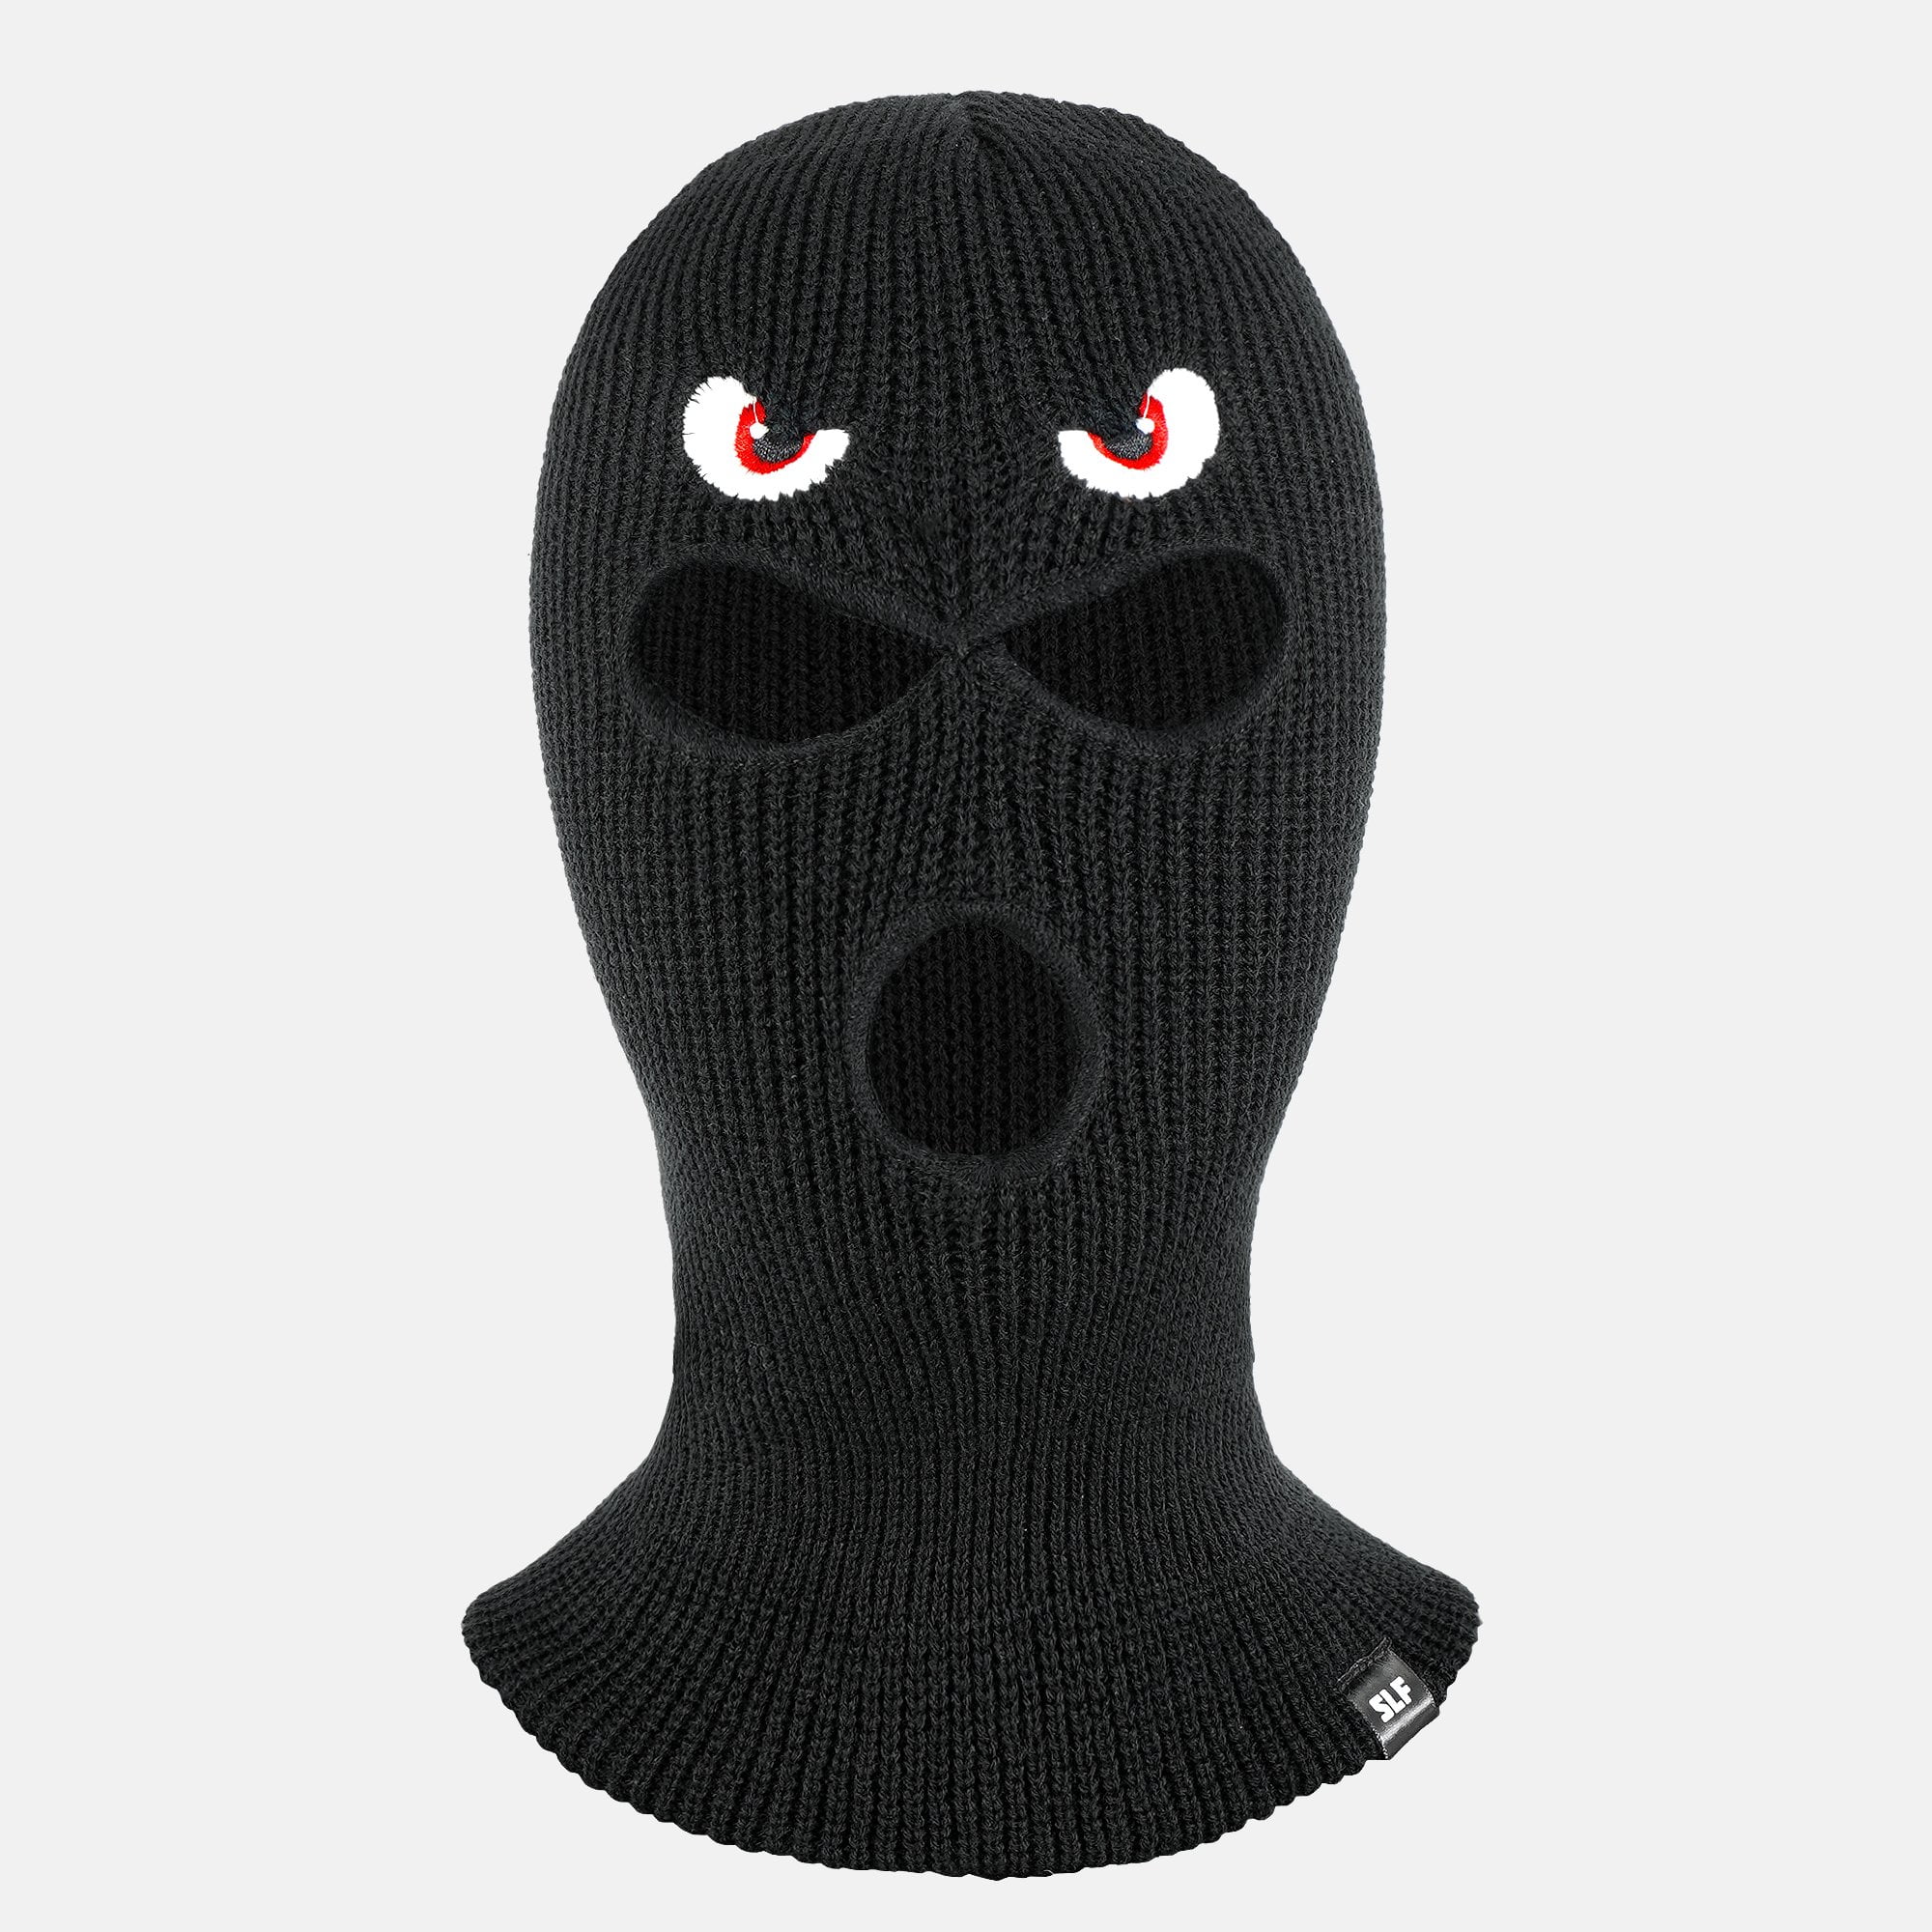 Wicked Eyes Ski Mask - Walmart.com